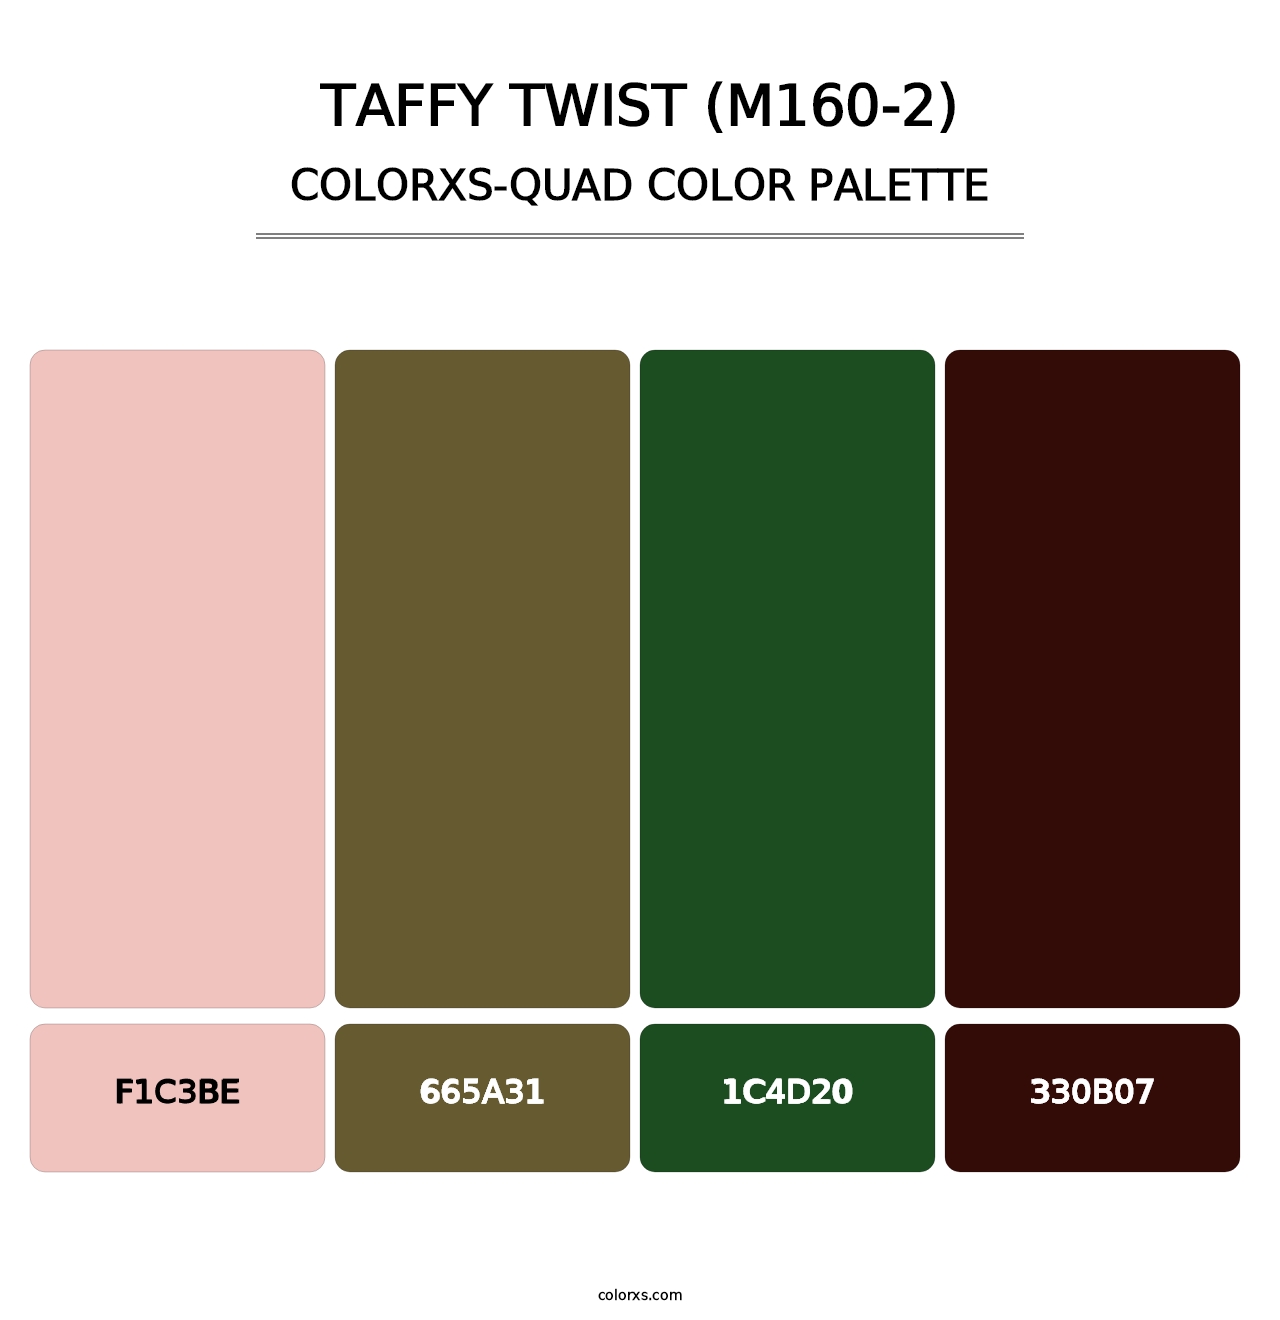 Taffy Twist (M160-2) - Colorxs Quad Palette